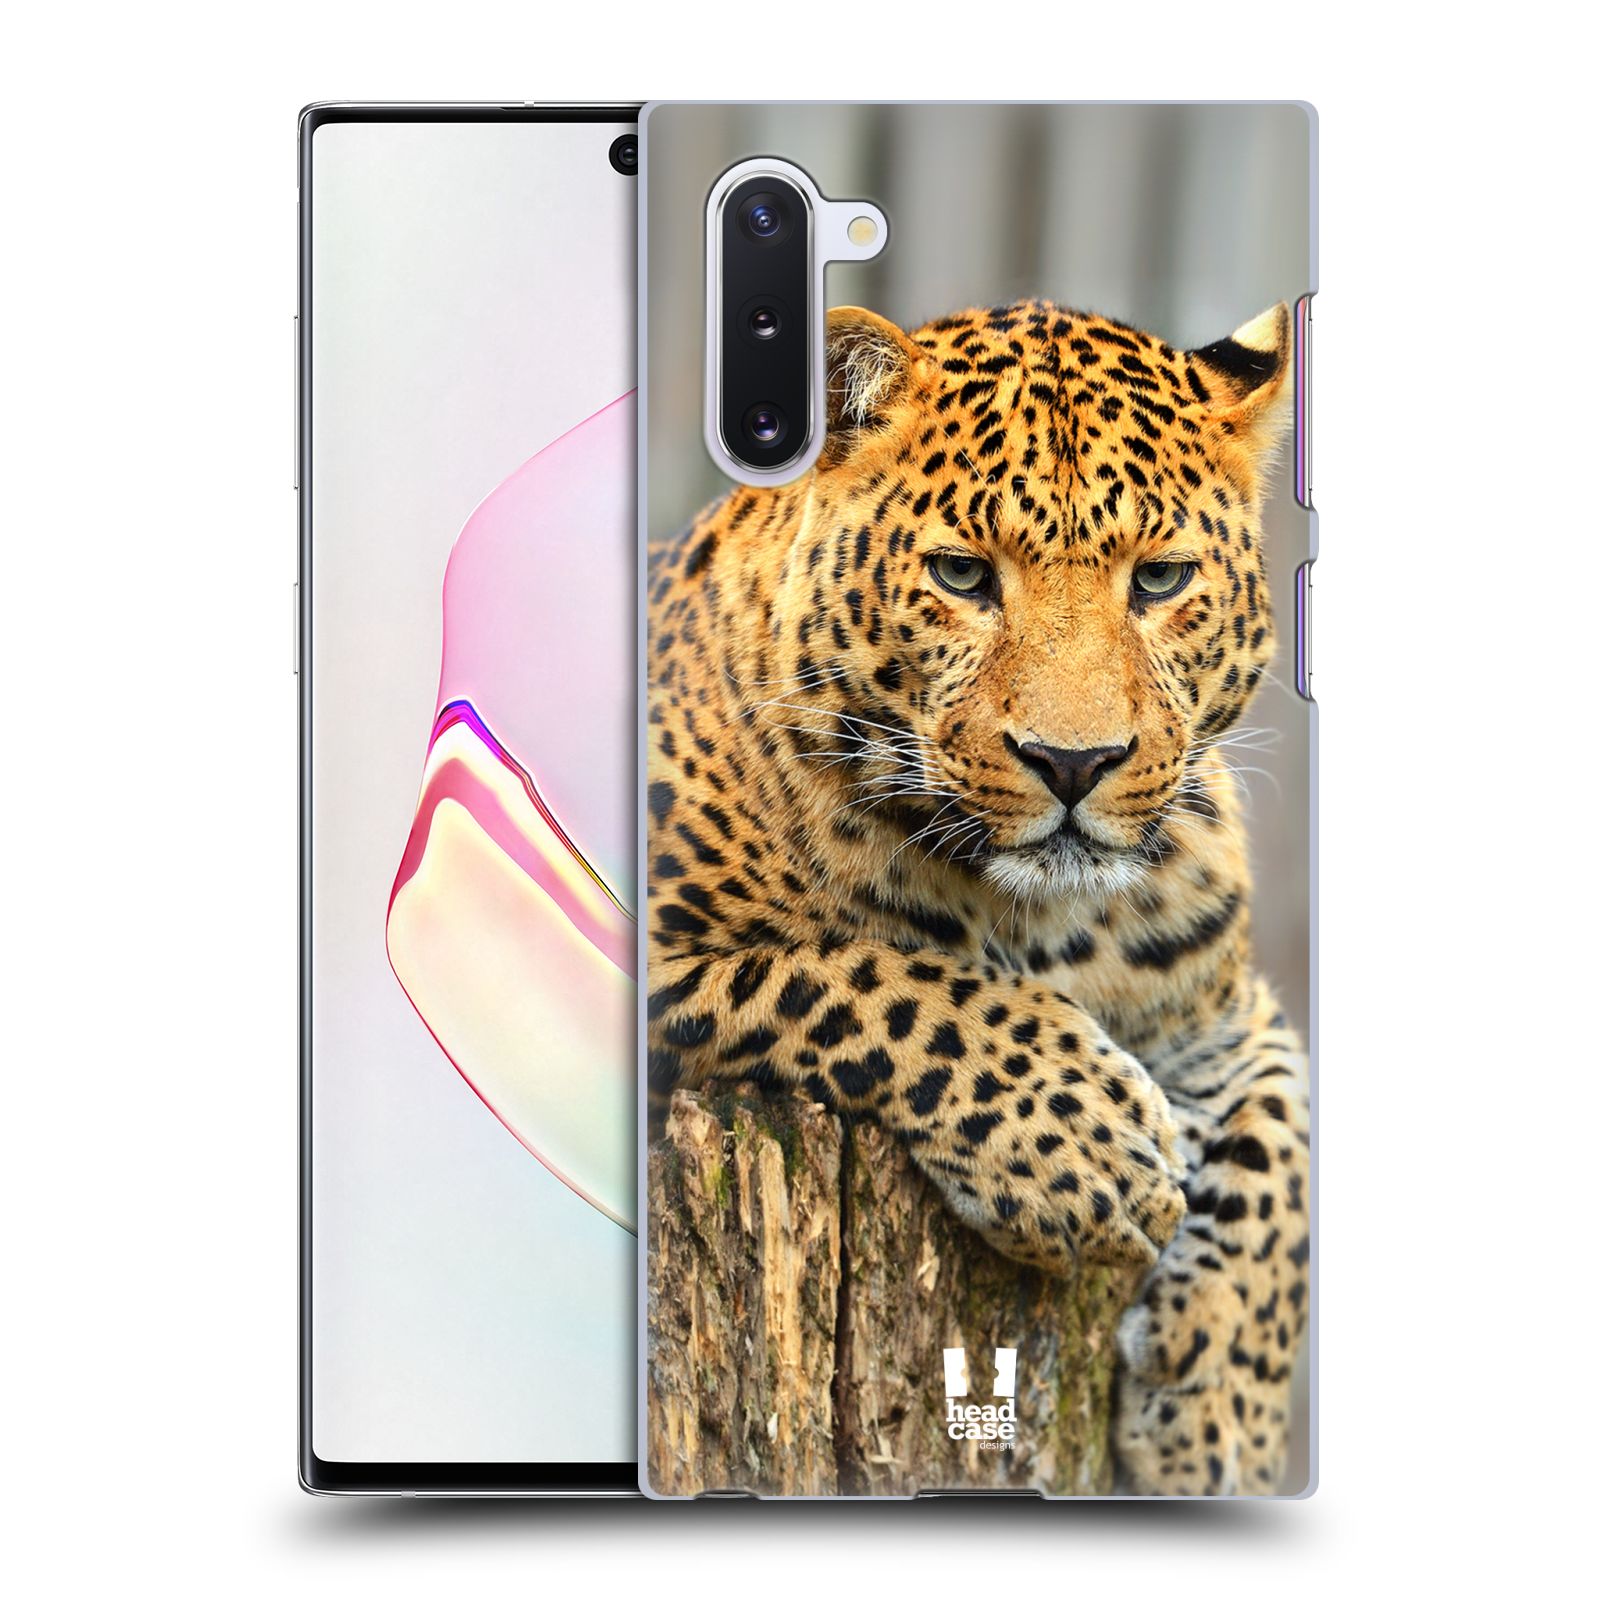 Pouzdro na mobil Samsung Galaxy Note 10 - HEAD CASE - vzor Divočina, Divoký život a zvířata foto LEOPARD PORTRÉT